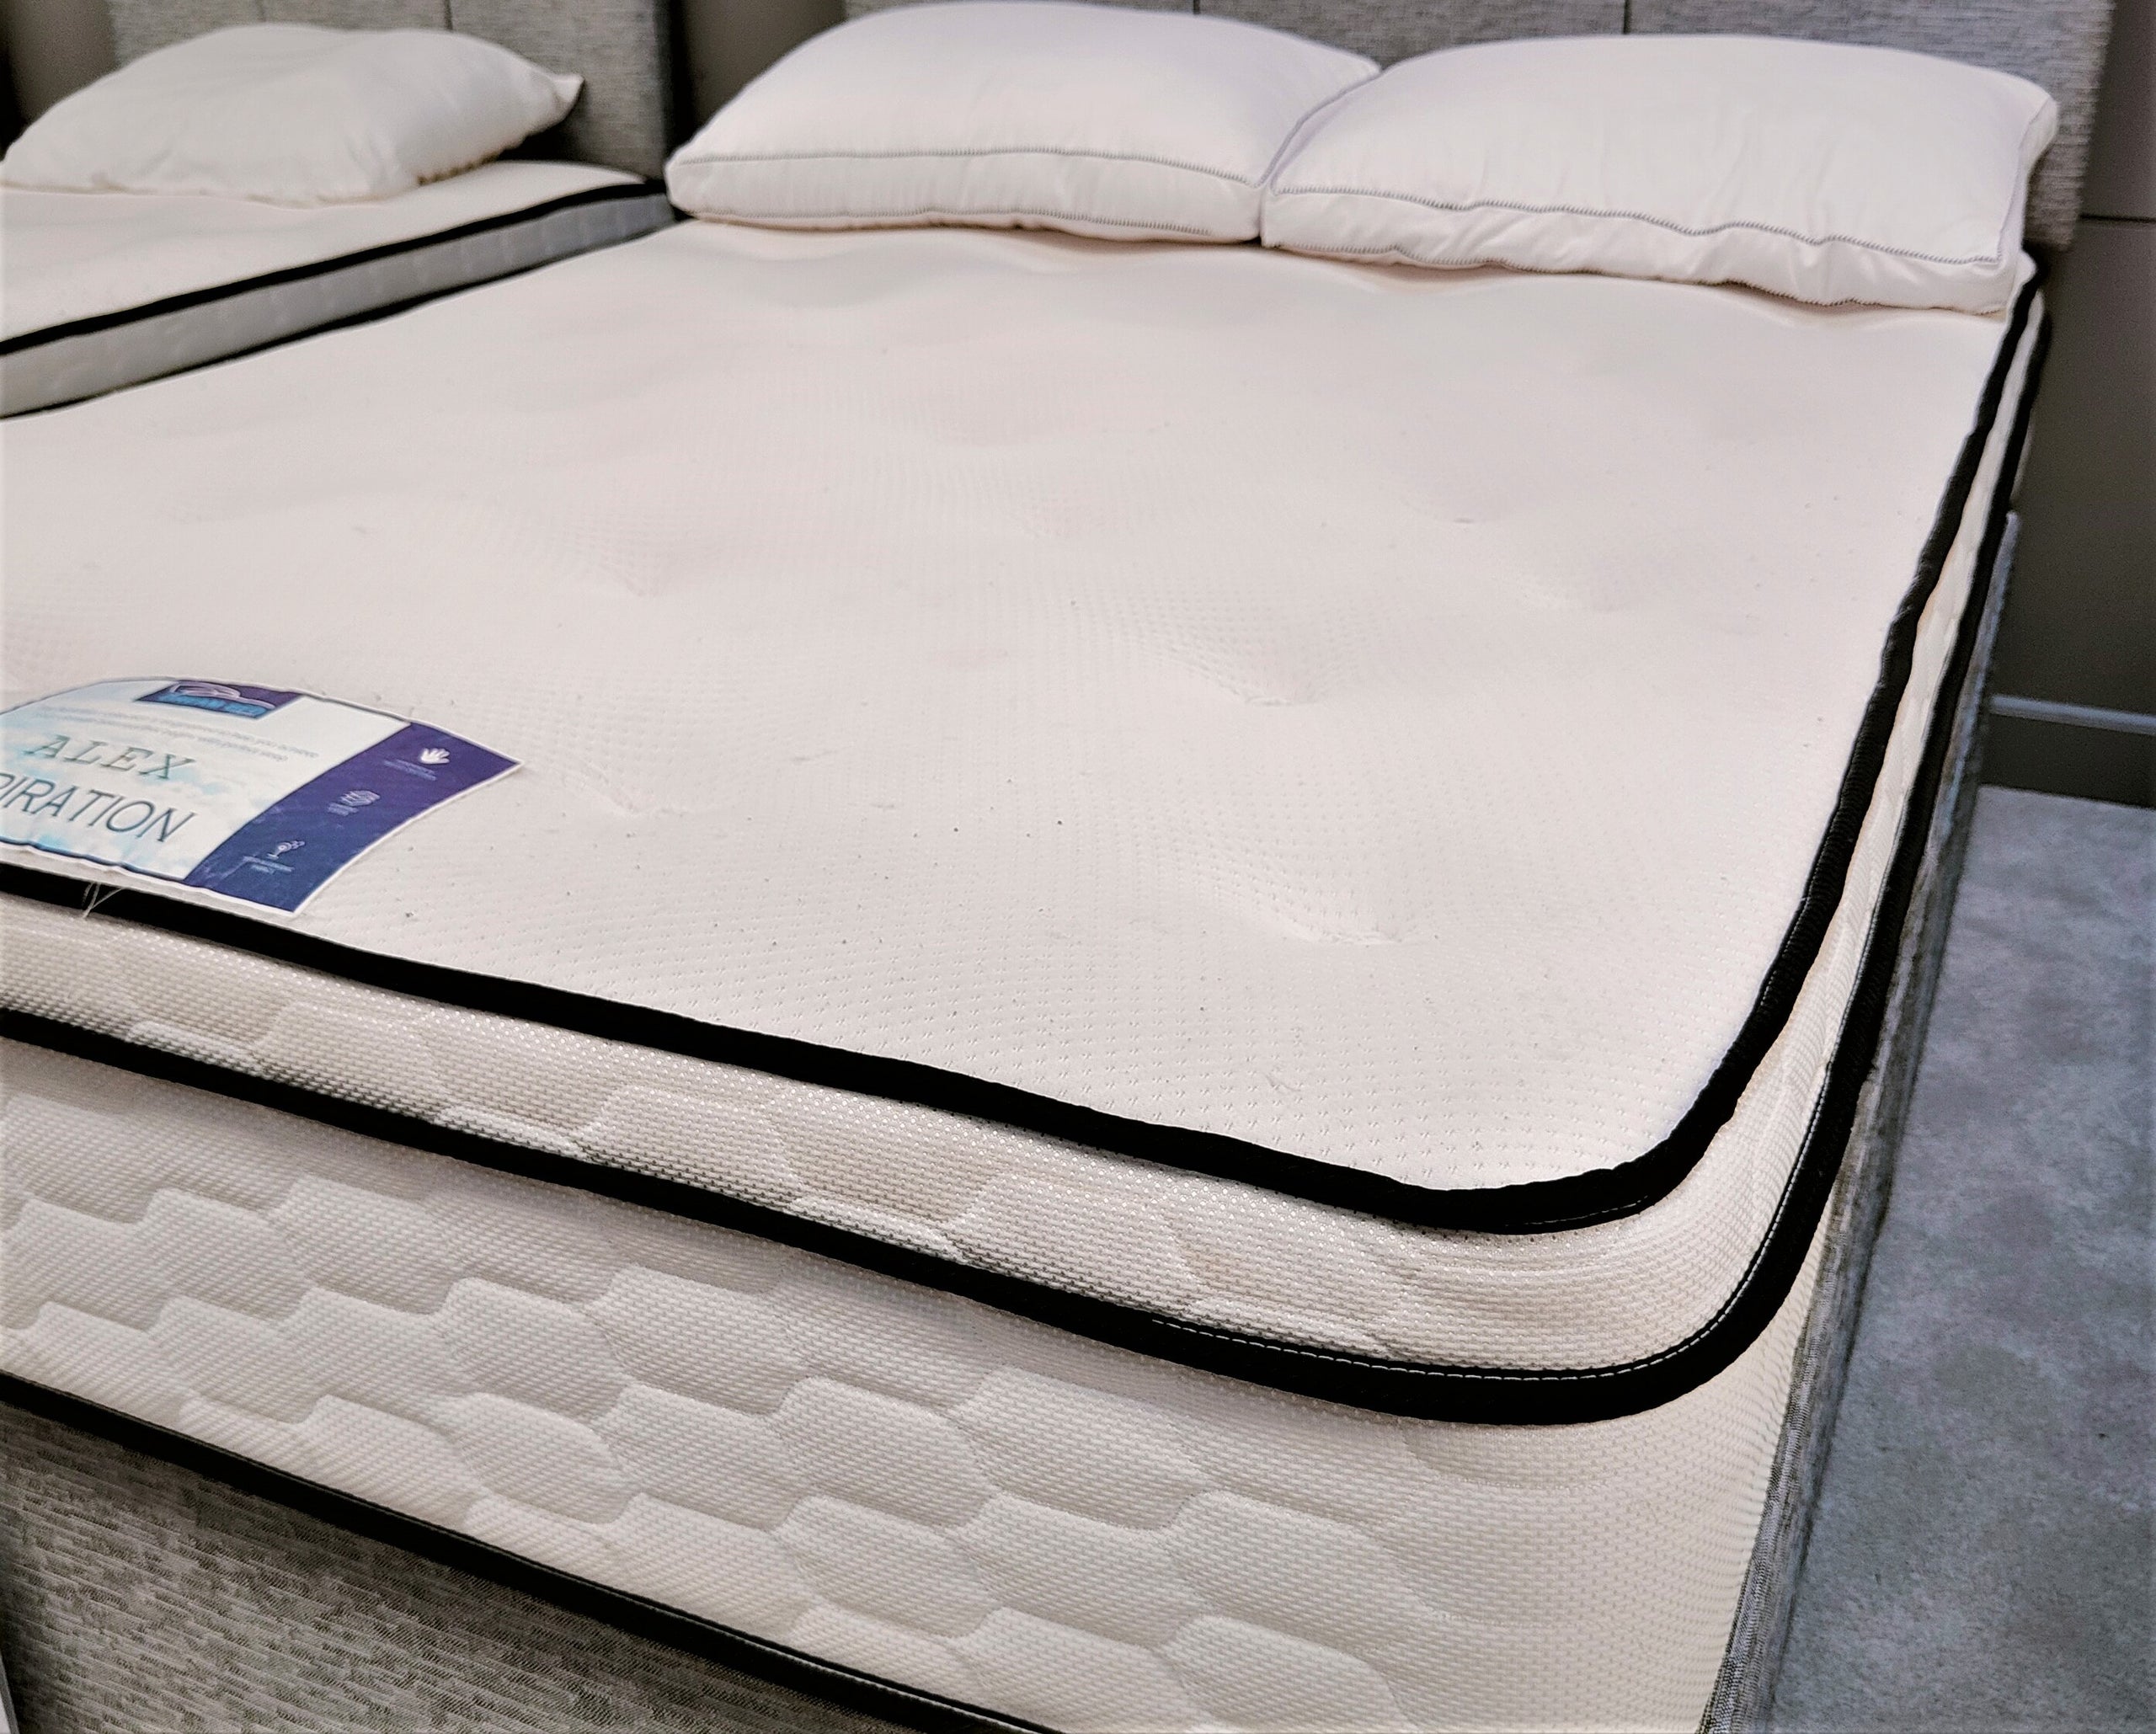 alex weiss mattress firm